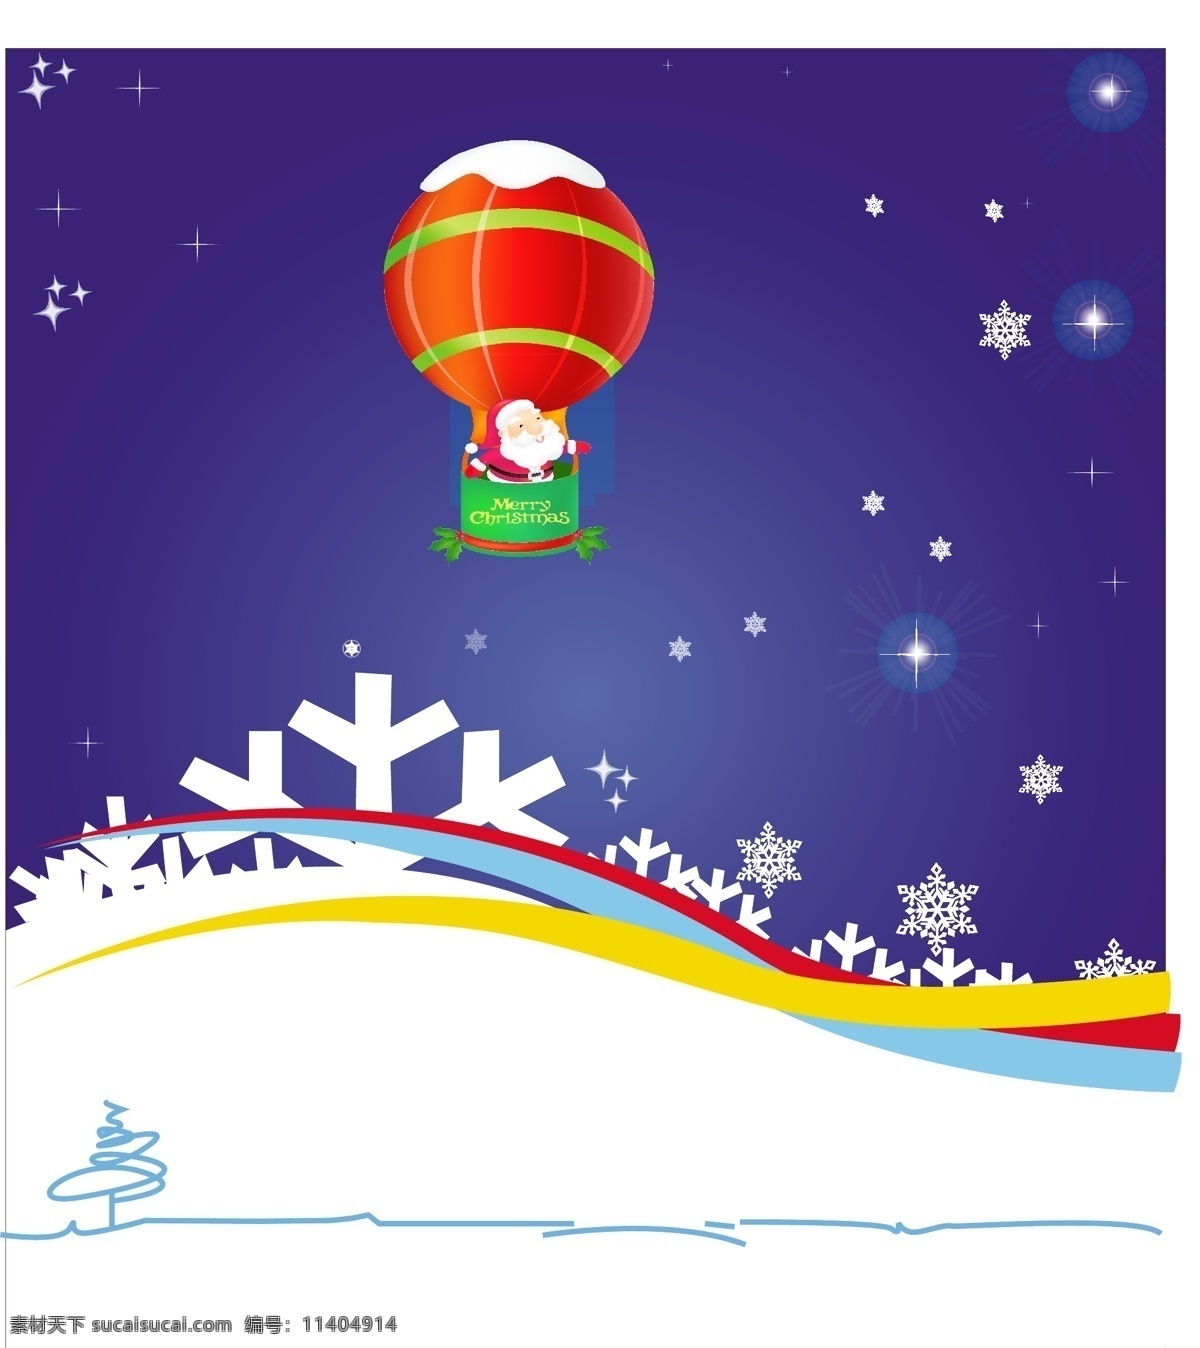 圣诞老人 乘坐 蓝色 背景 气球 飞行 摘要背景壁纸 庆典和聚会 圣诞节 节日和季节 模板和模型